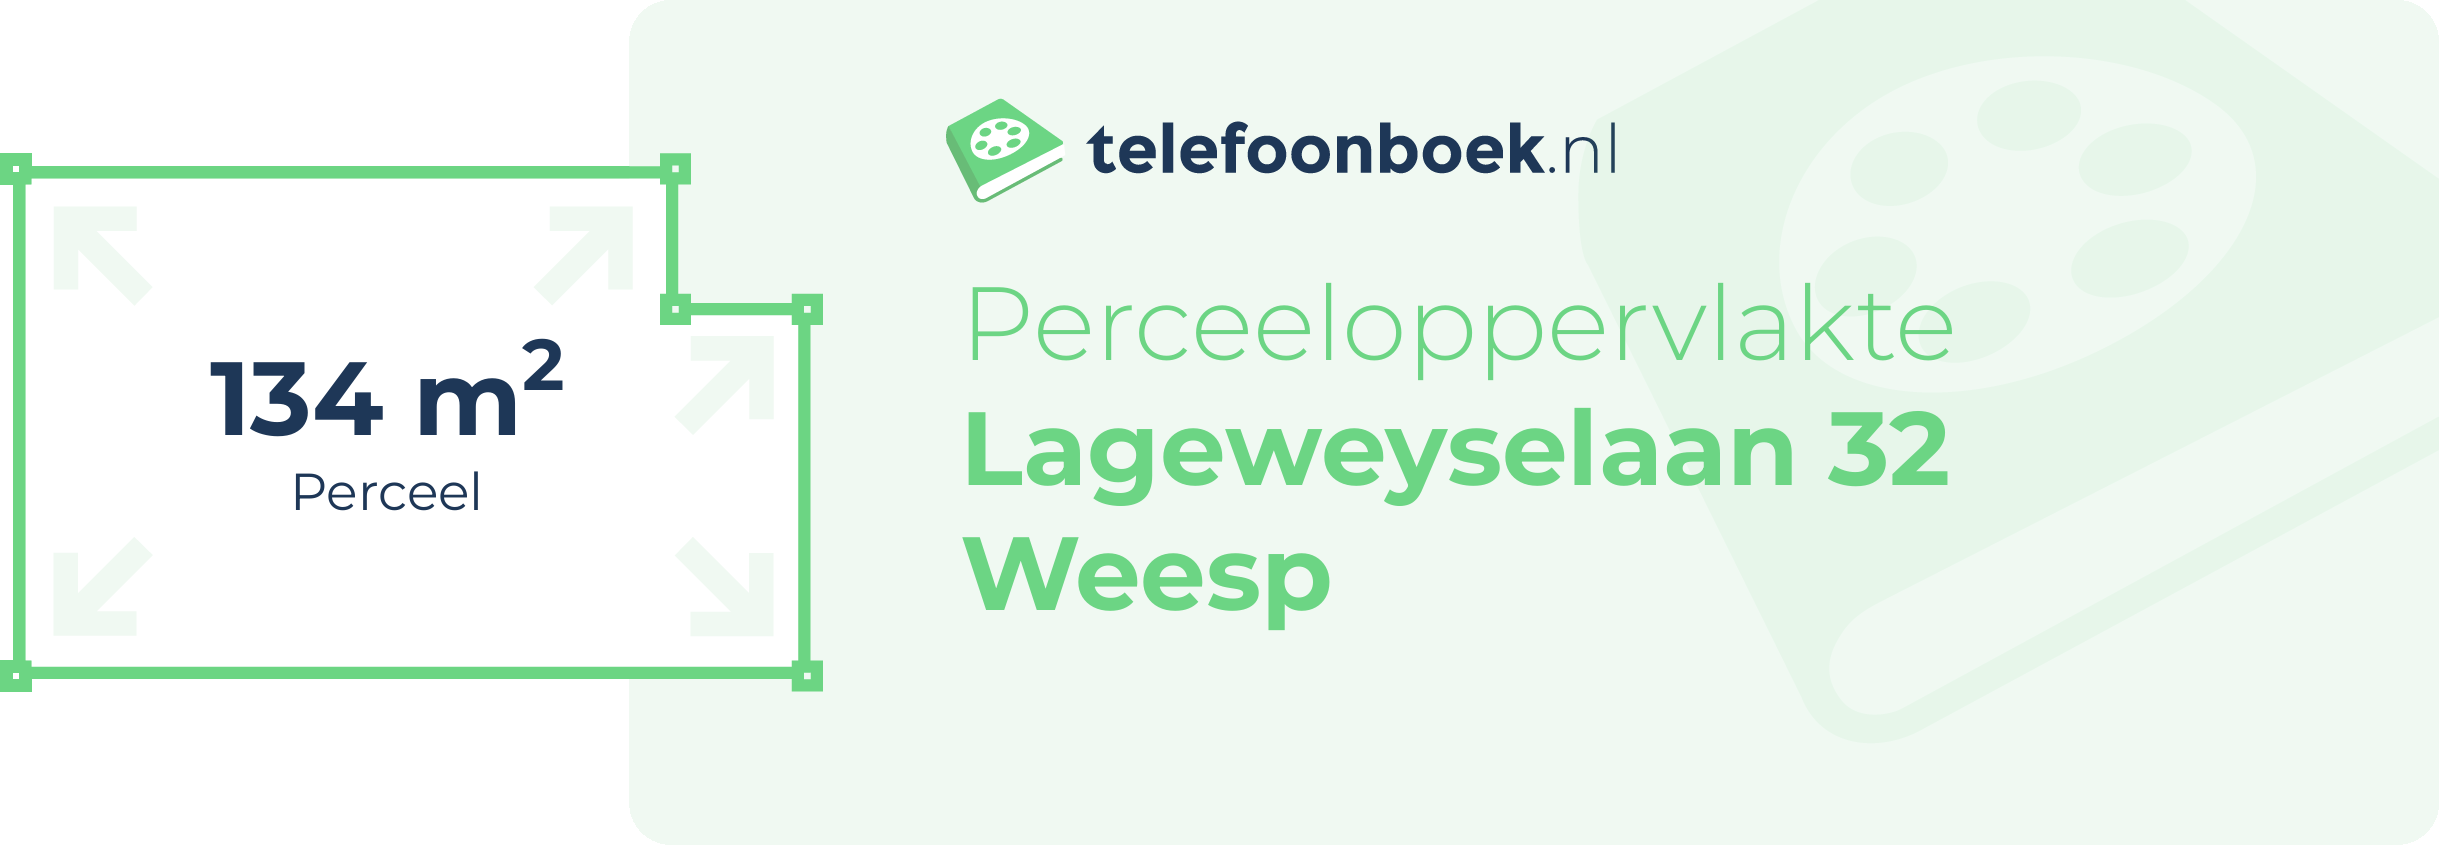 Perceeloppervlakte Lageweyselaan 32 Weesp